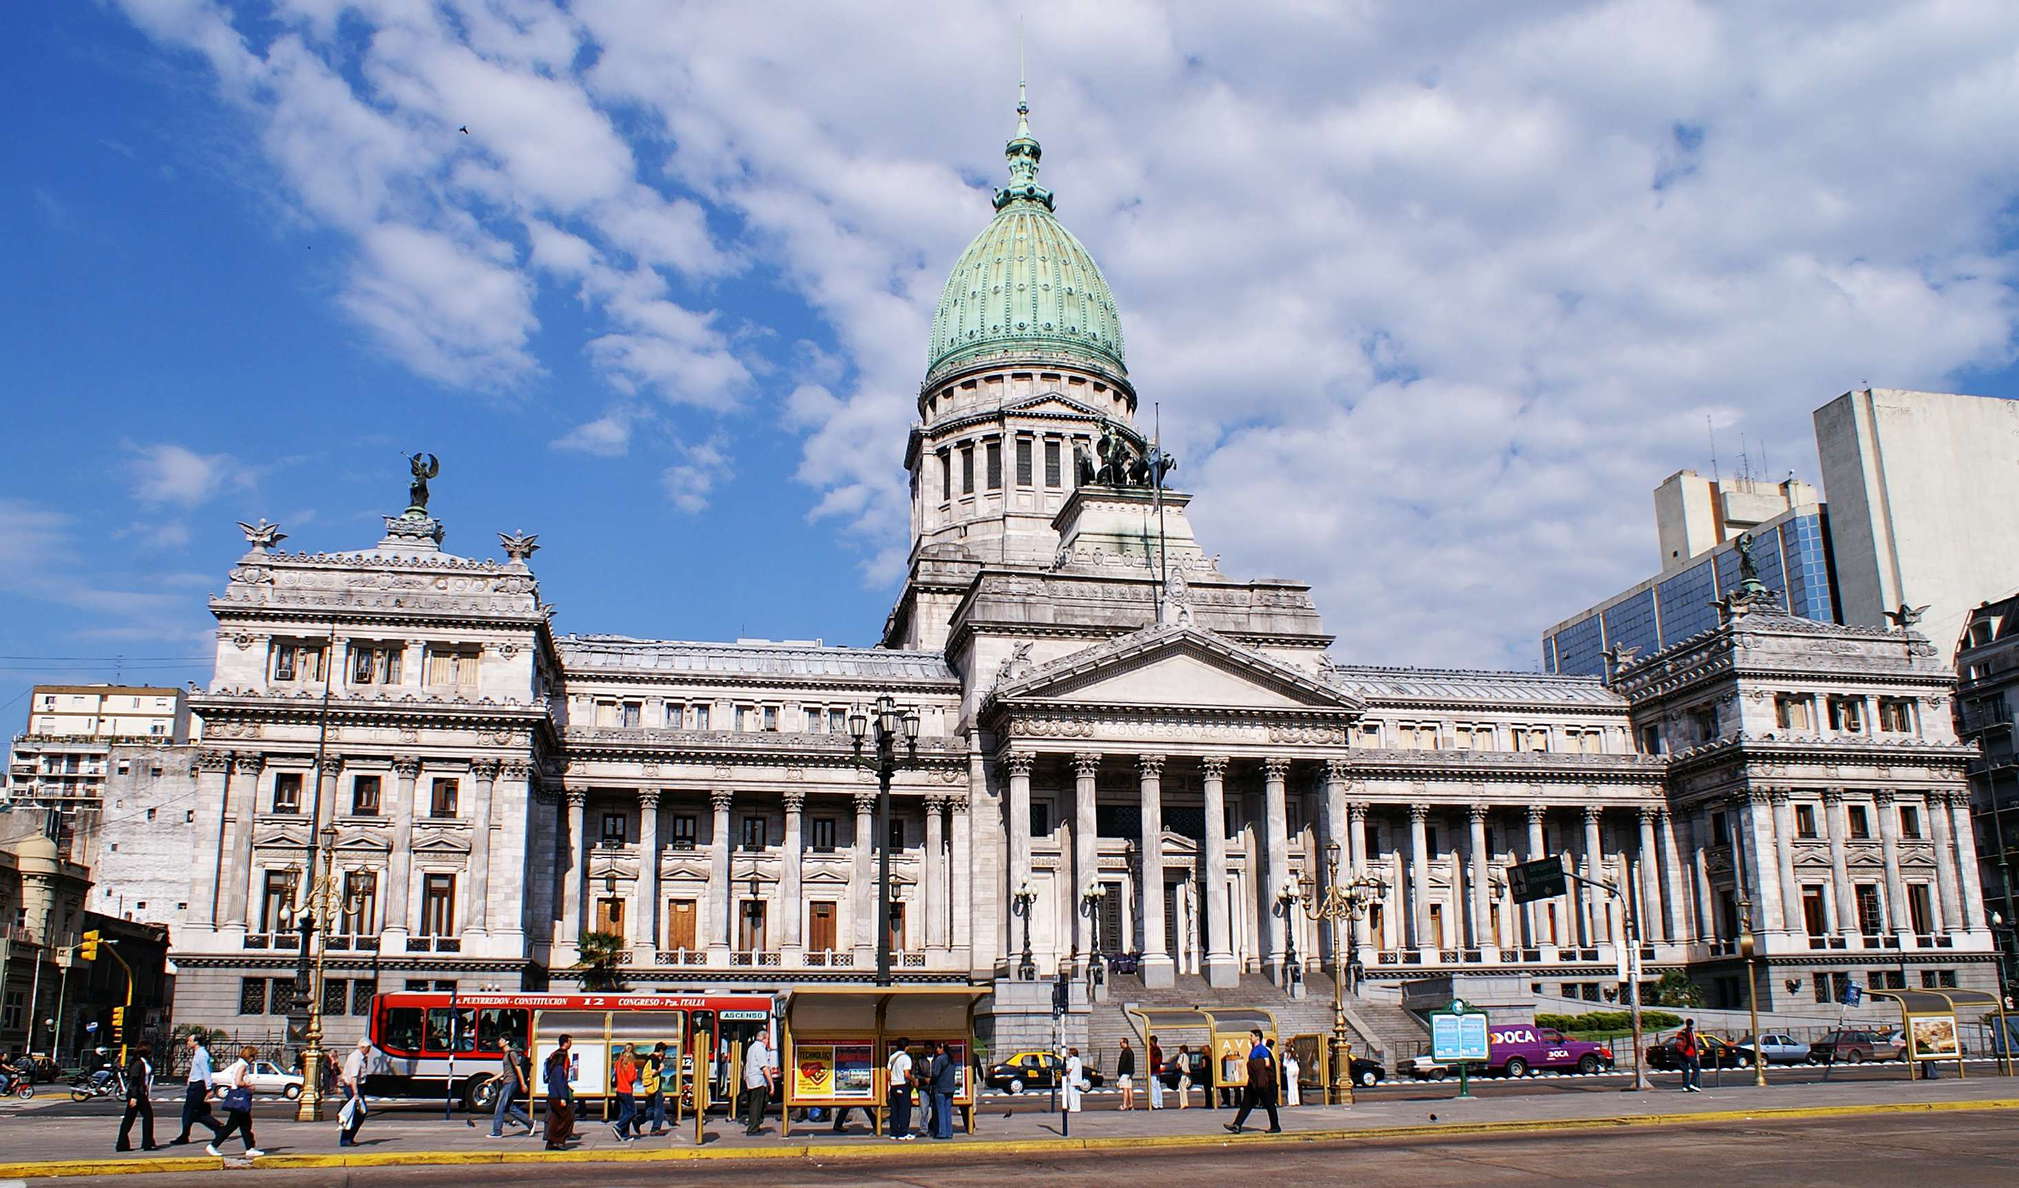 Buenos Aires | Congreso Nacional